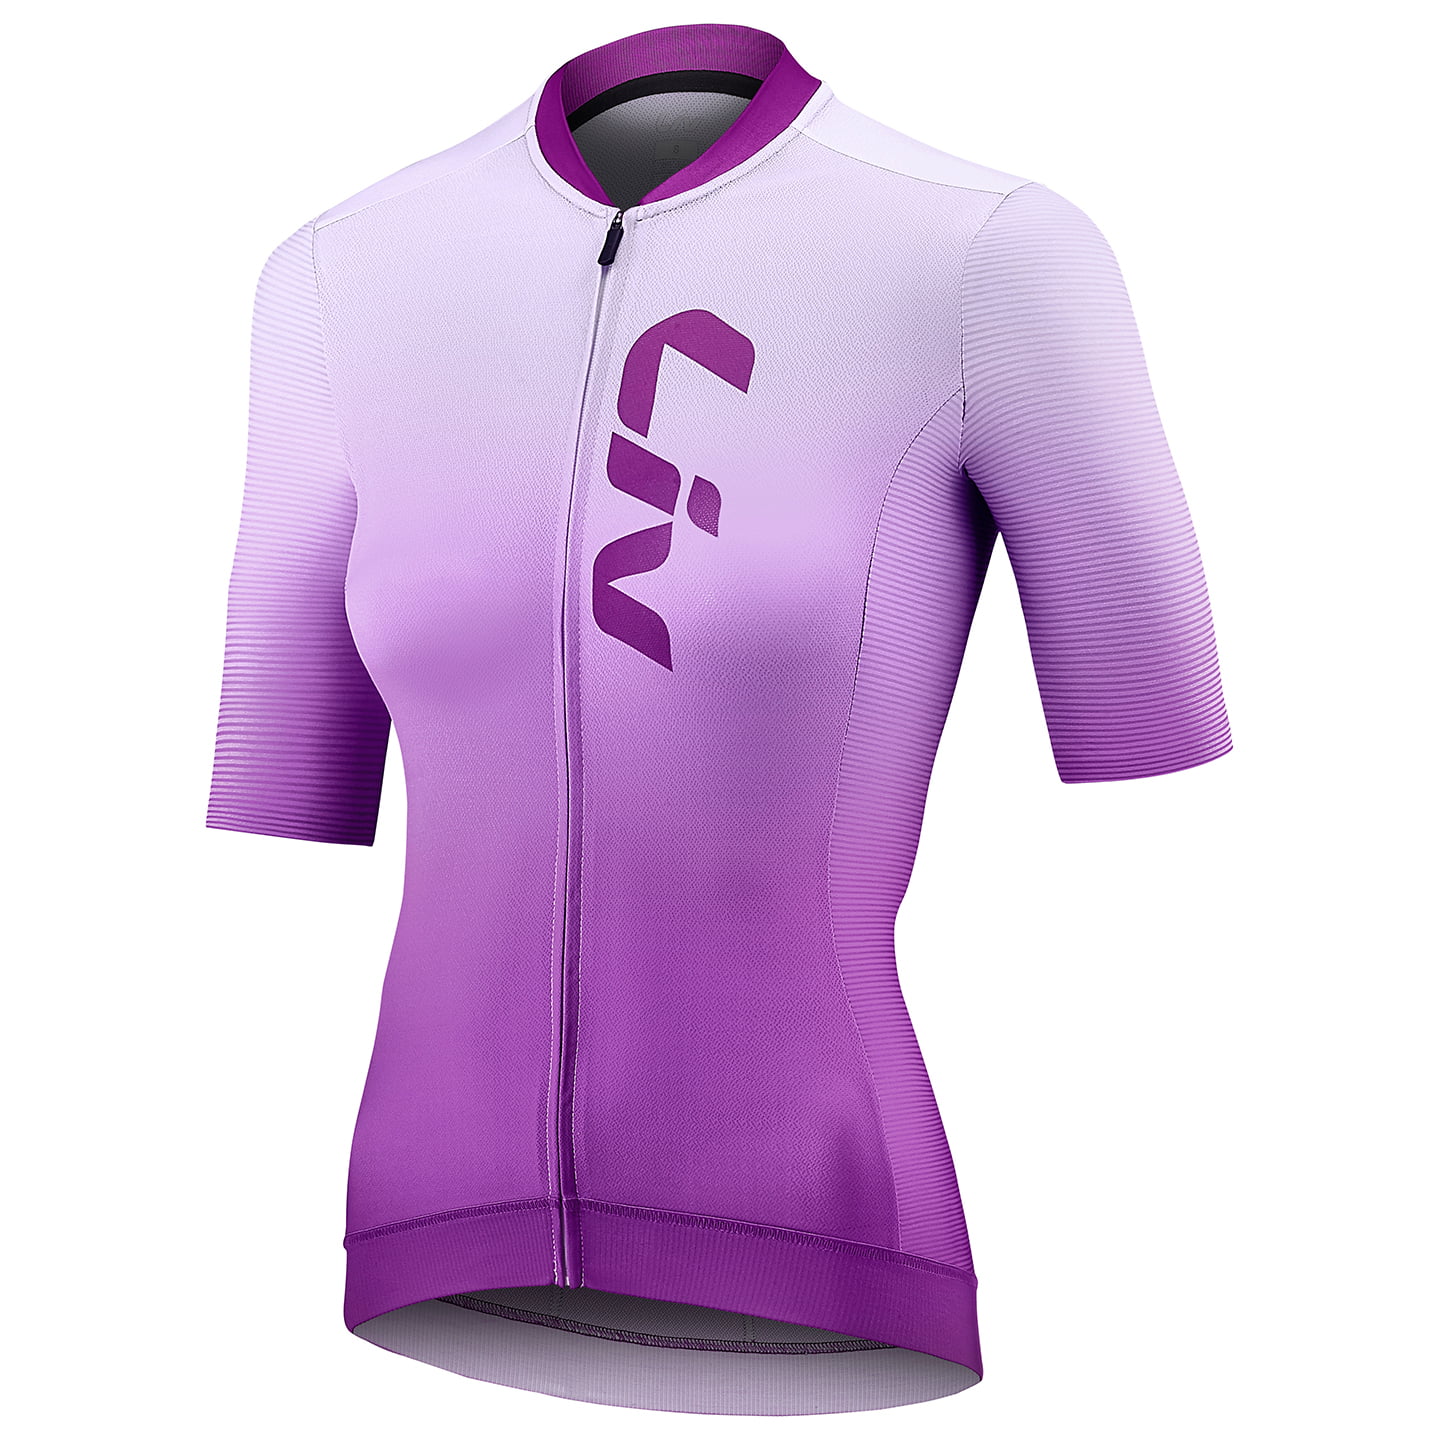 LIV Race Day Women’s Short Sleeve Jersey Women’s Short Sleeve Jersey, size XS, Bike shirt, Cycle wear